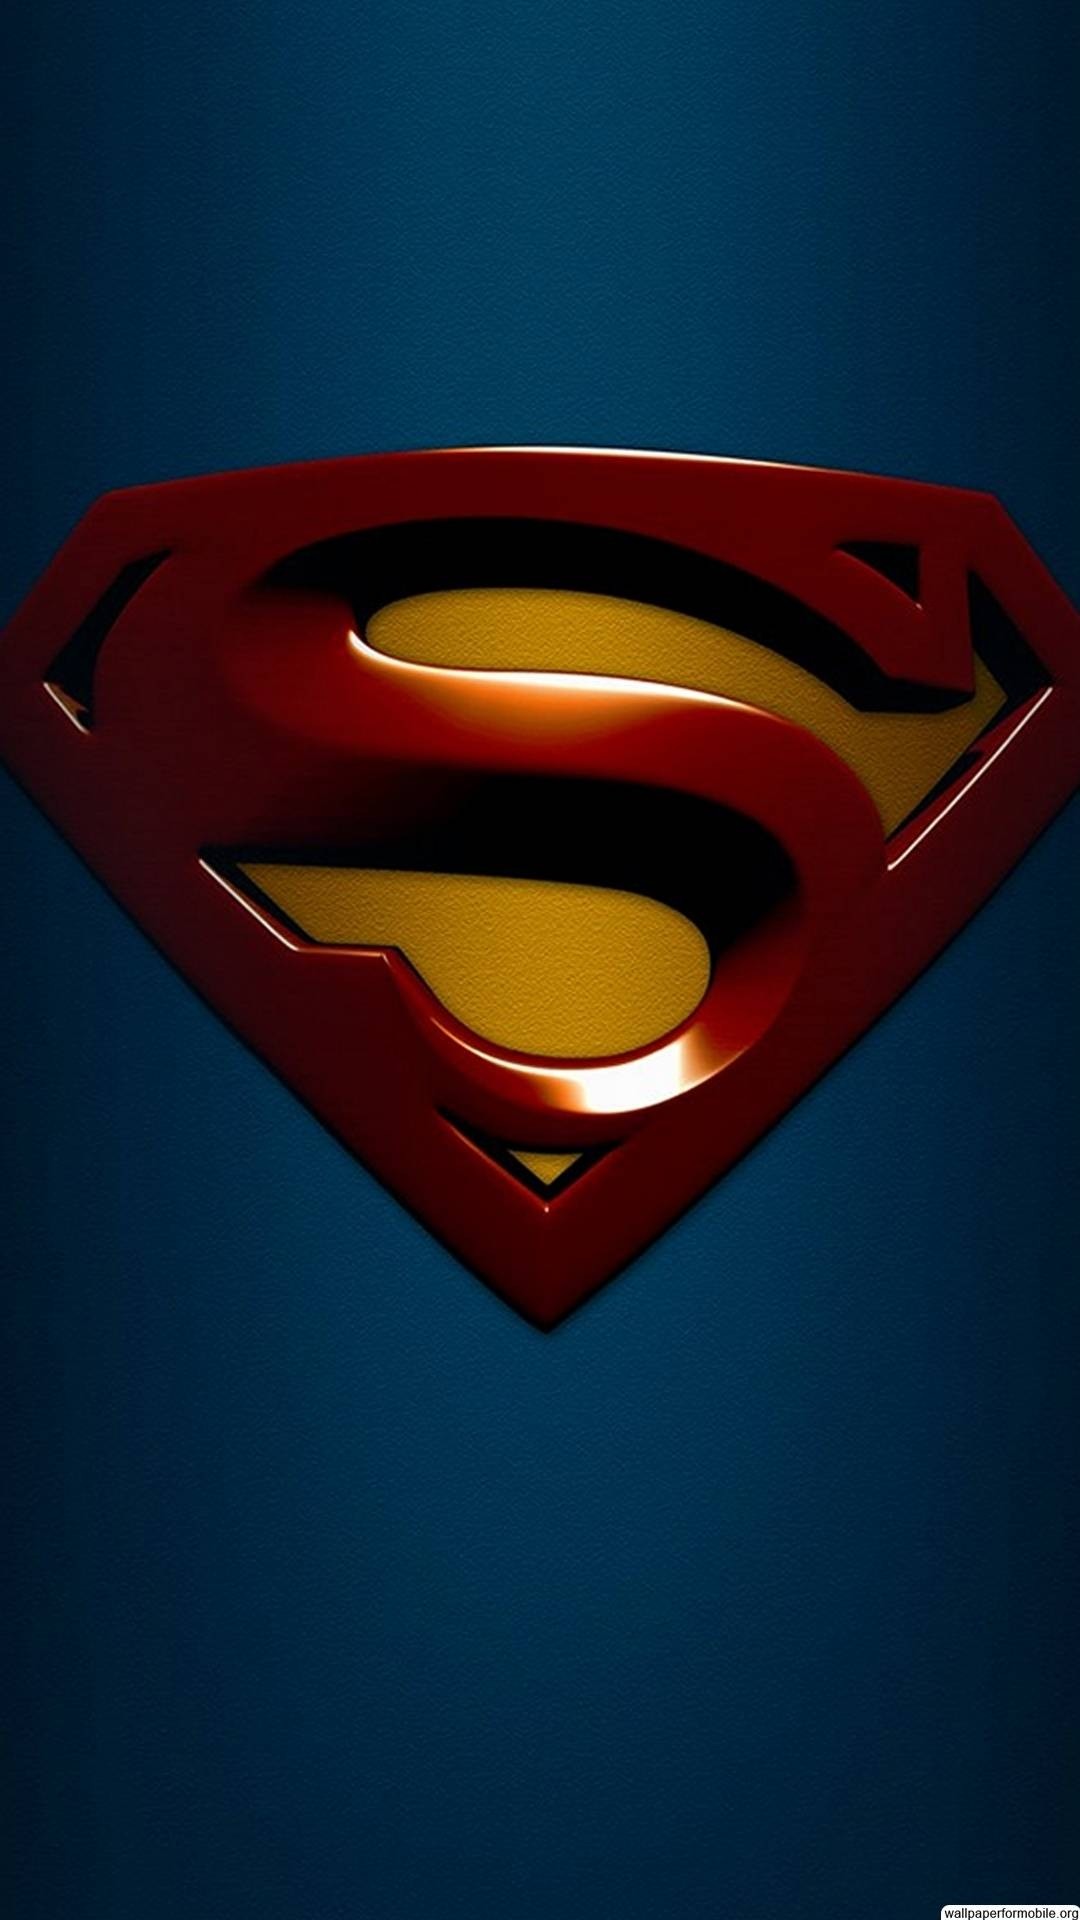 fond d'écran tactile 3d iphone,superman,super héros,rouge,personnage fictif,ligue de justice